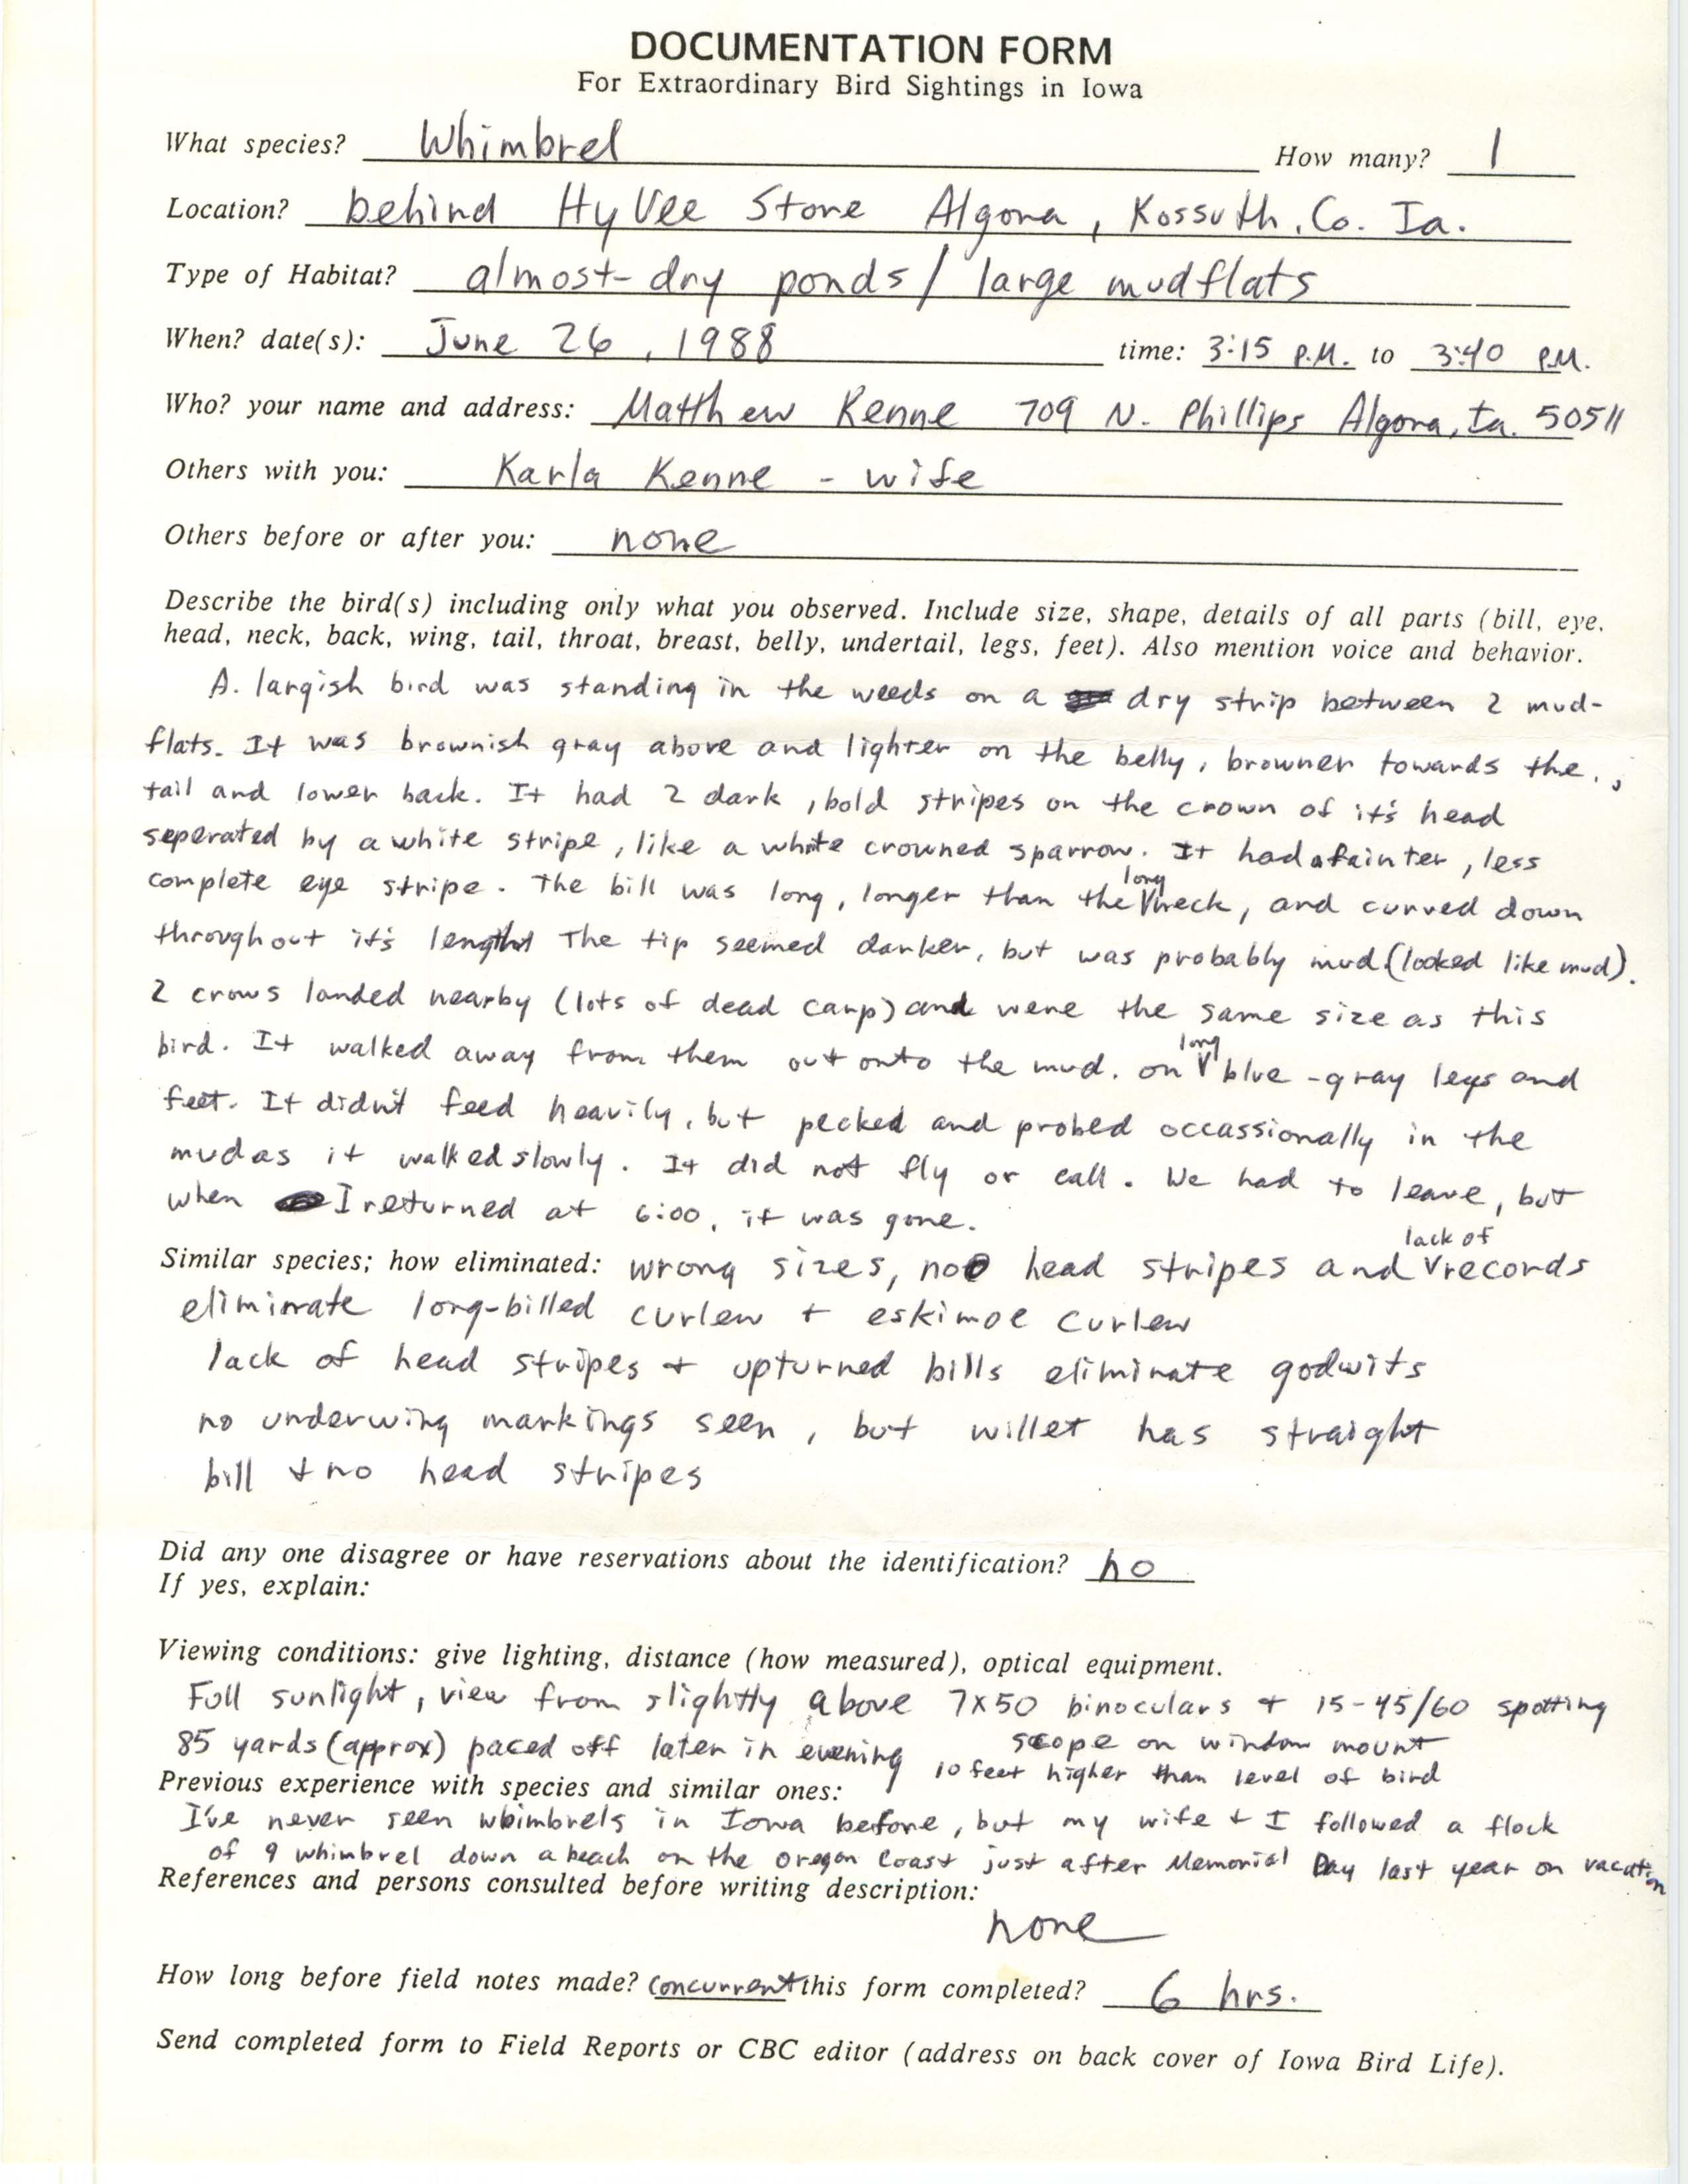 Rare bird documentation form for Whimbrel at Algona, 1988